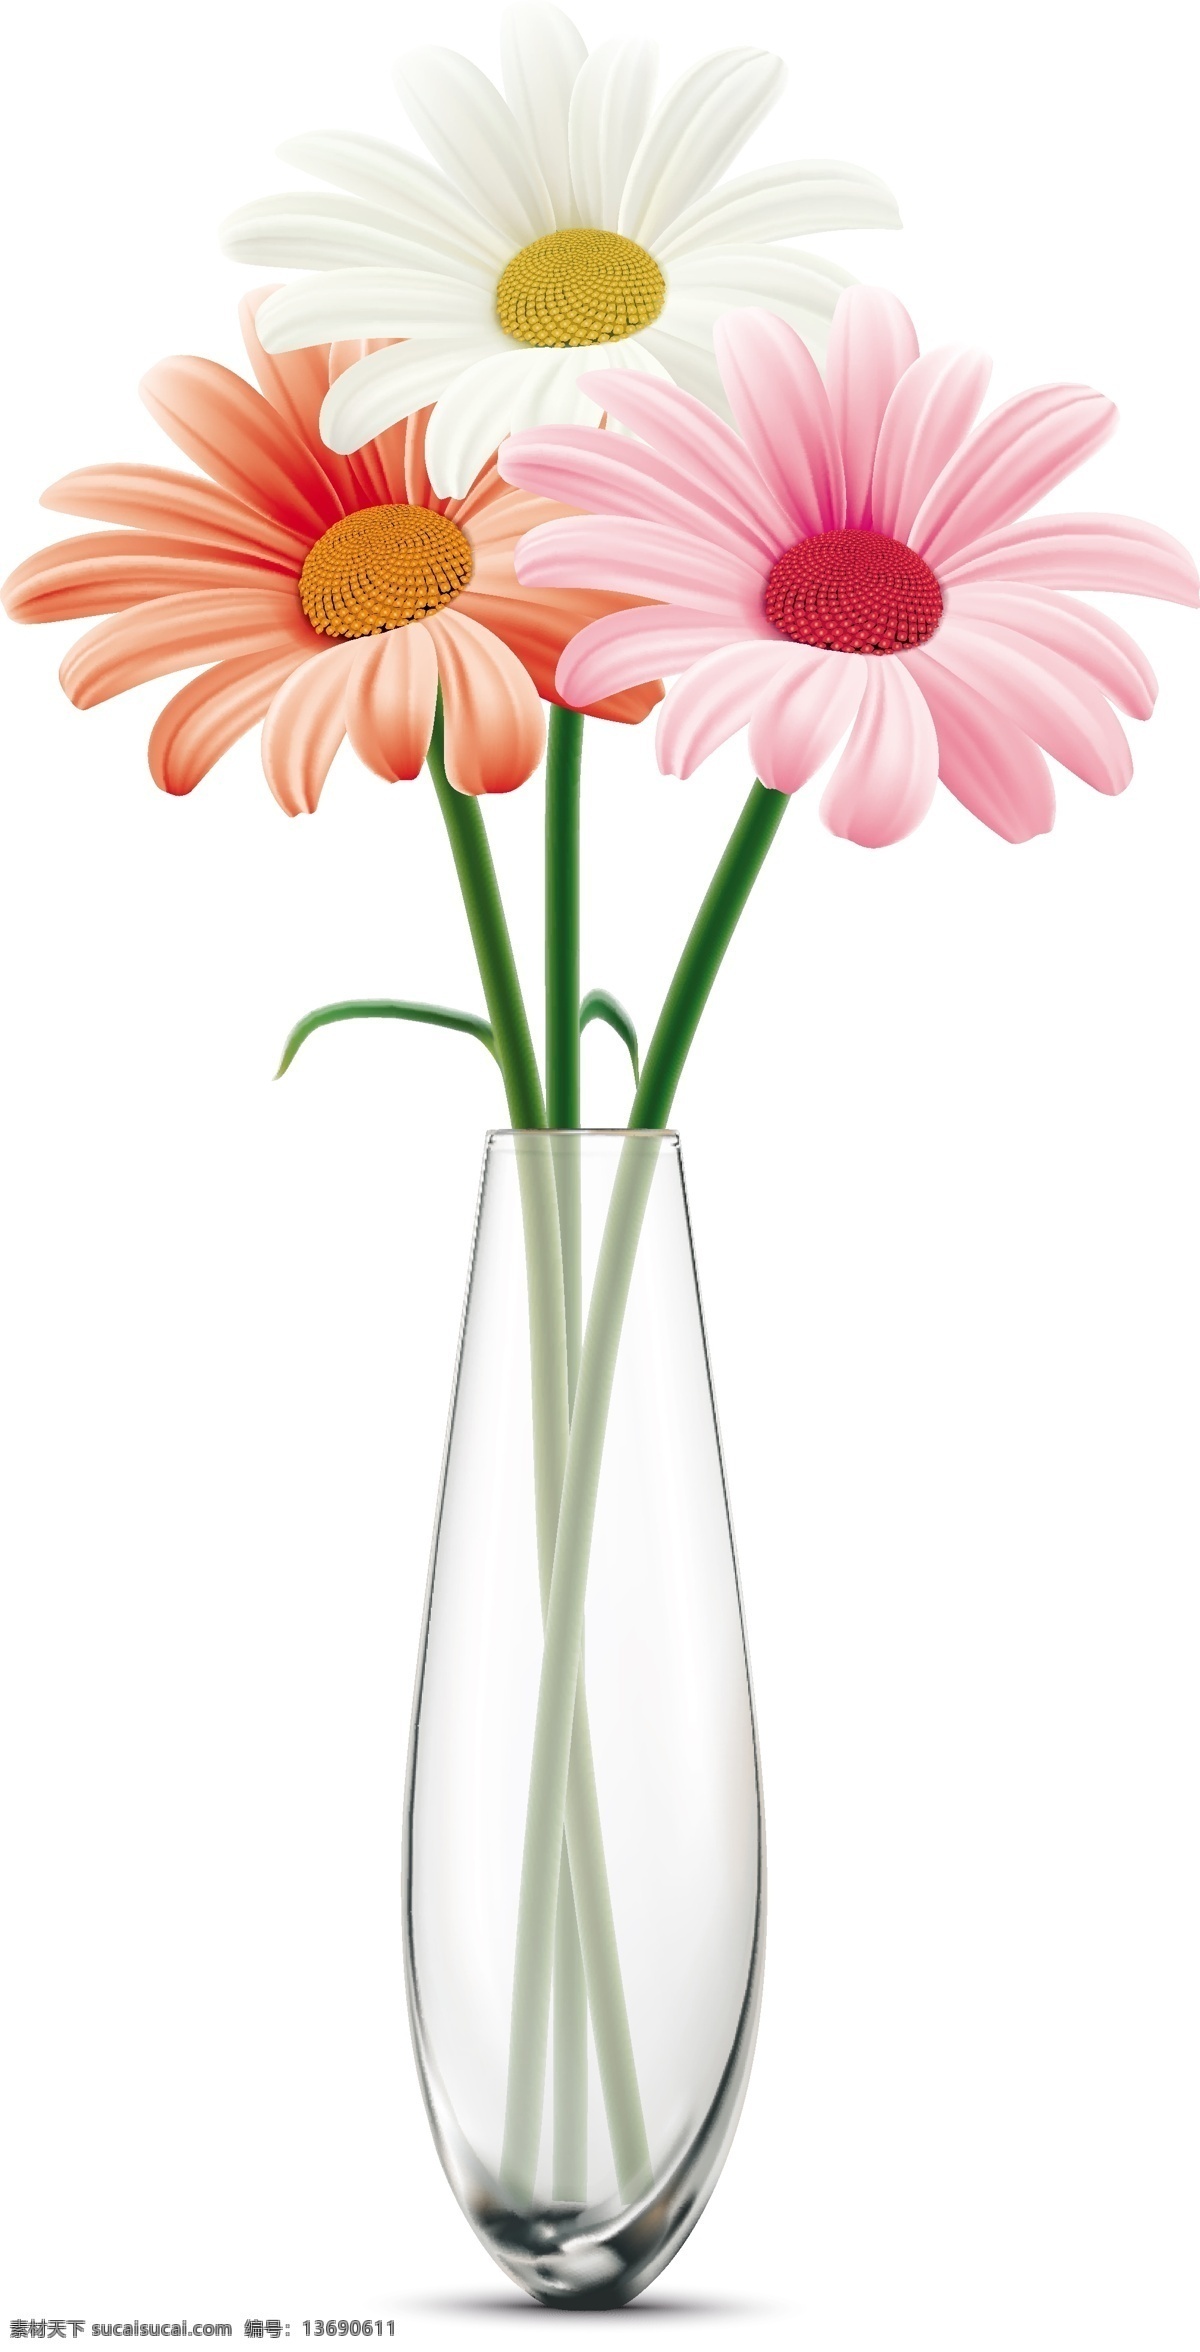 透明 花瓶 里 彩色 花朵 矢量 透明花瓶 彩色花朵 花艺 插花 装饰 花卉 漂亮的花朵 唯美 清新花朵 花卉植物 矢量素材